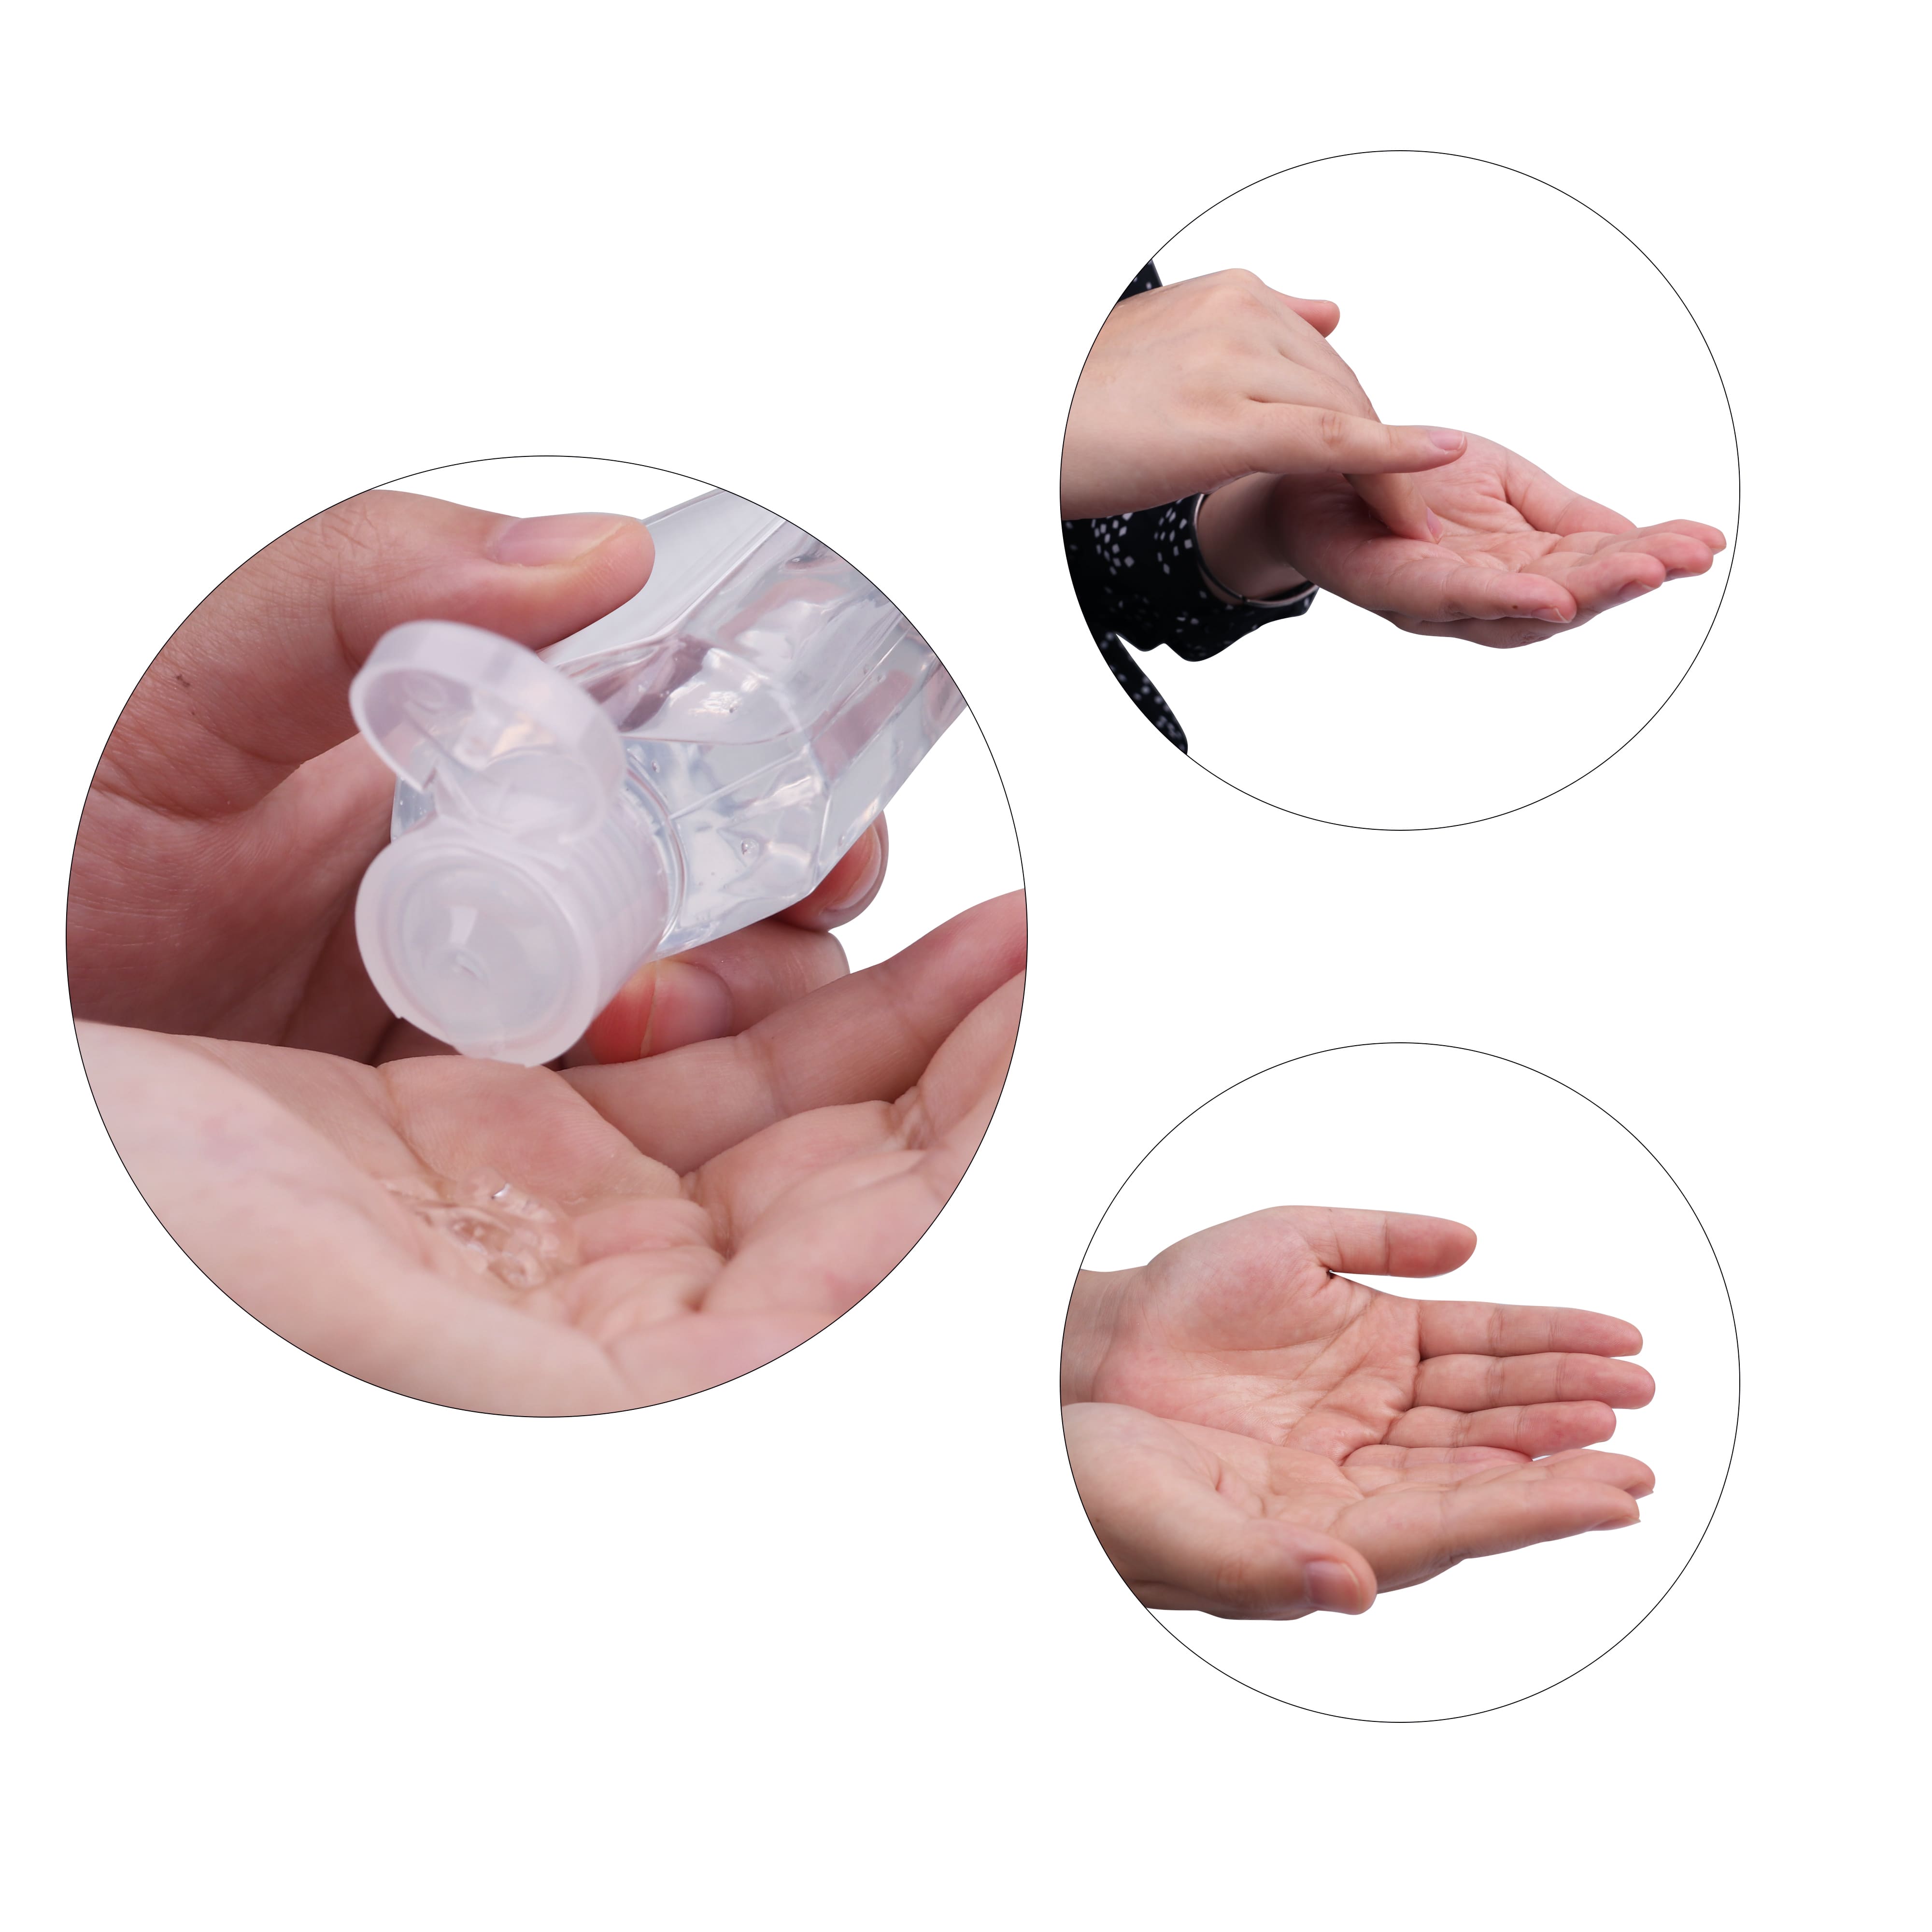  Buy 60ml Hand Sanitiser Gel Online in Australia 